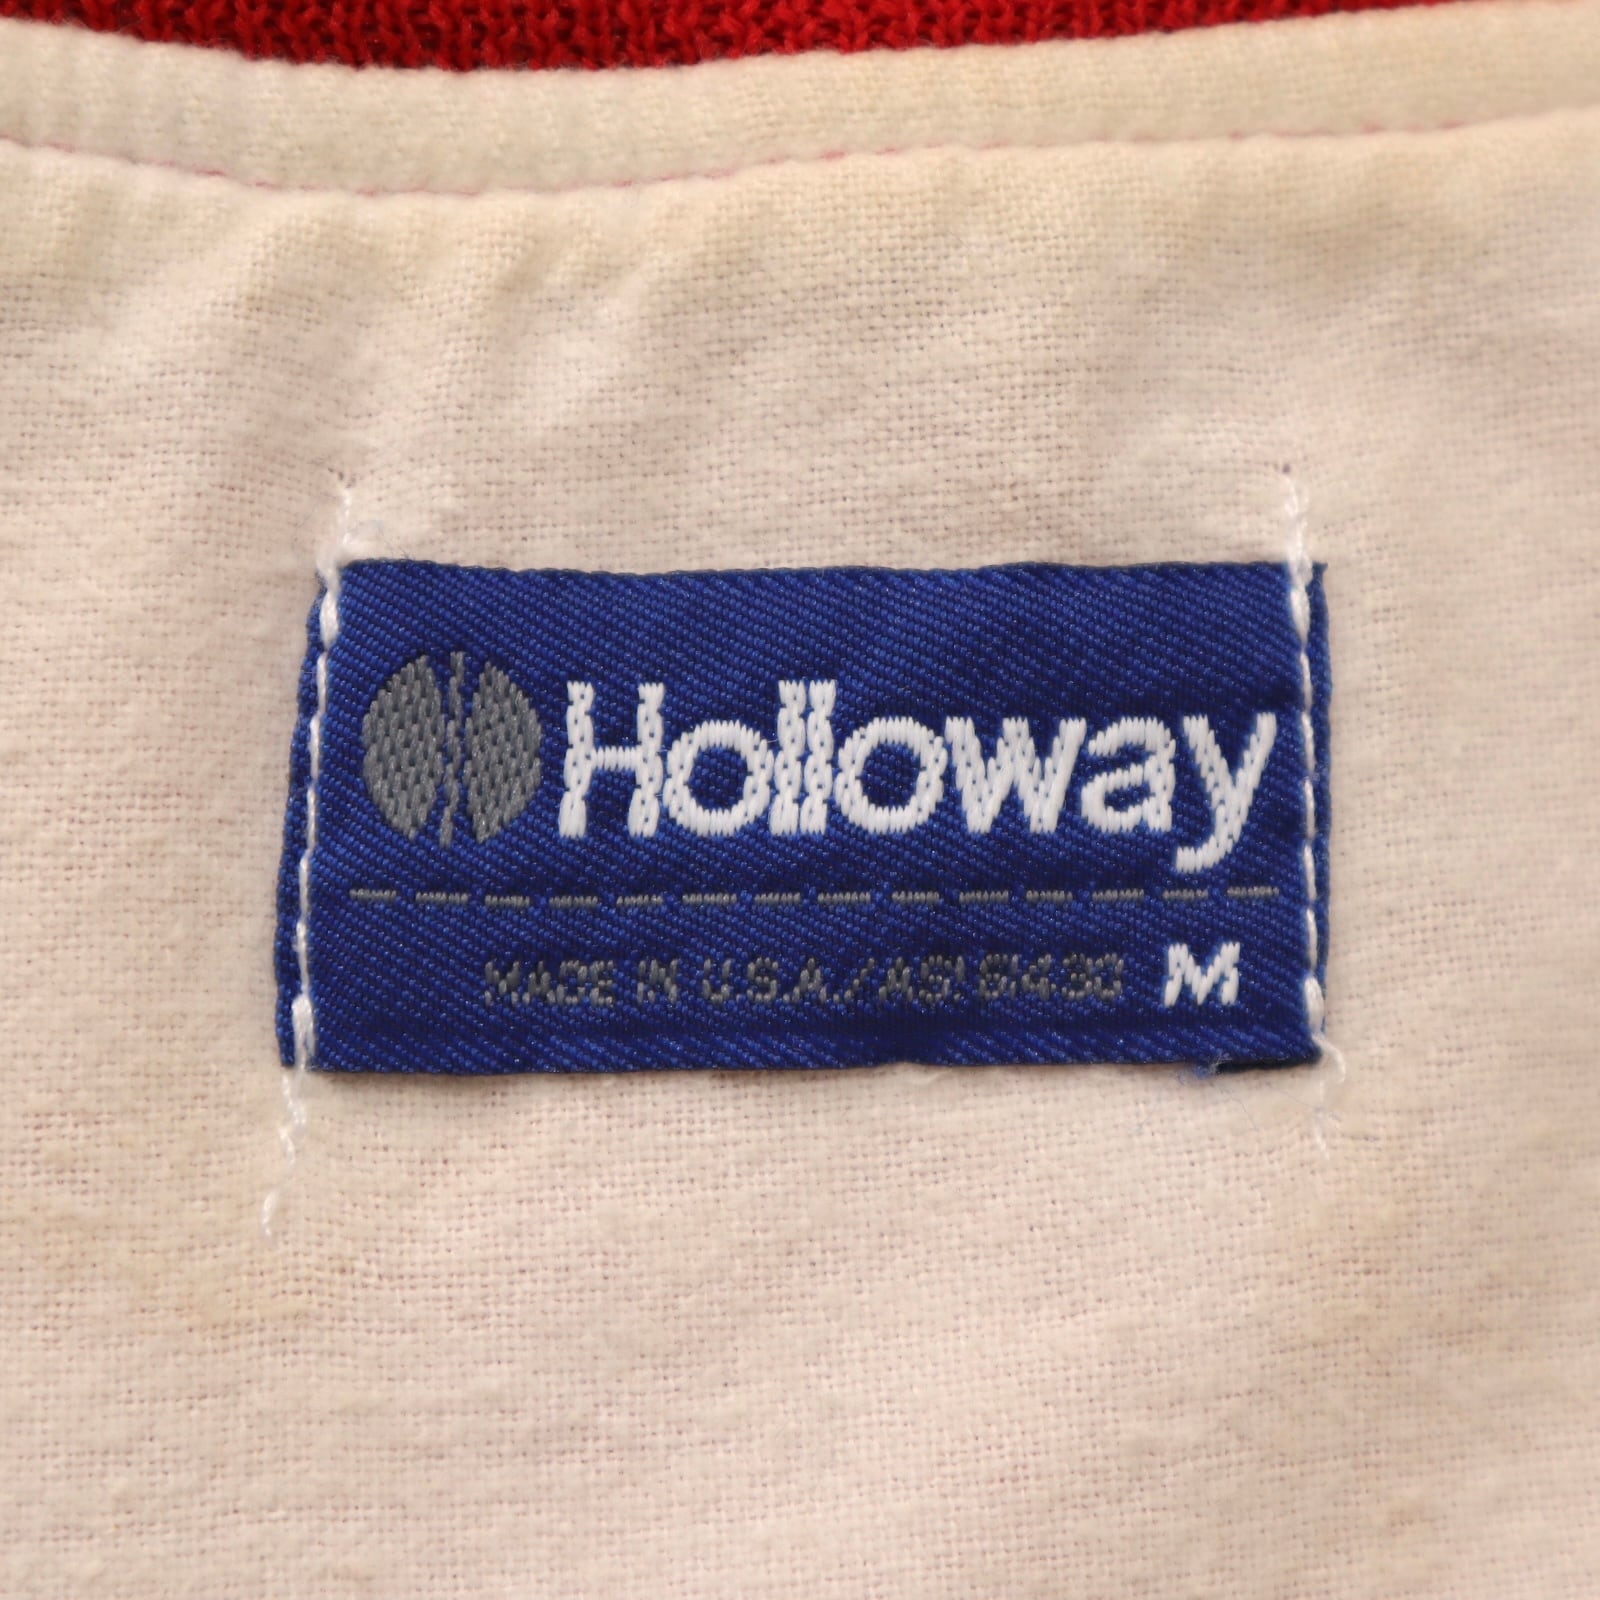 90s Holloway チェーンステッチ 刺繍 ナイロン スタジャン アワード